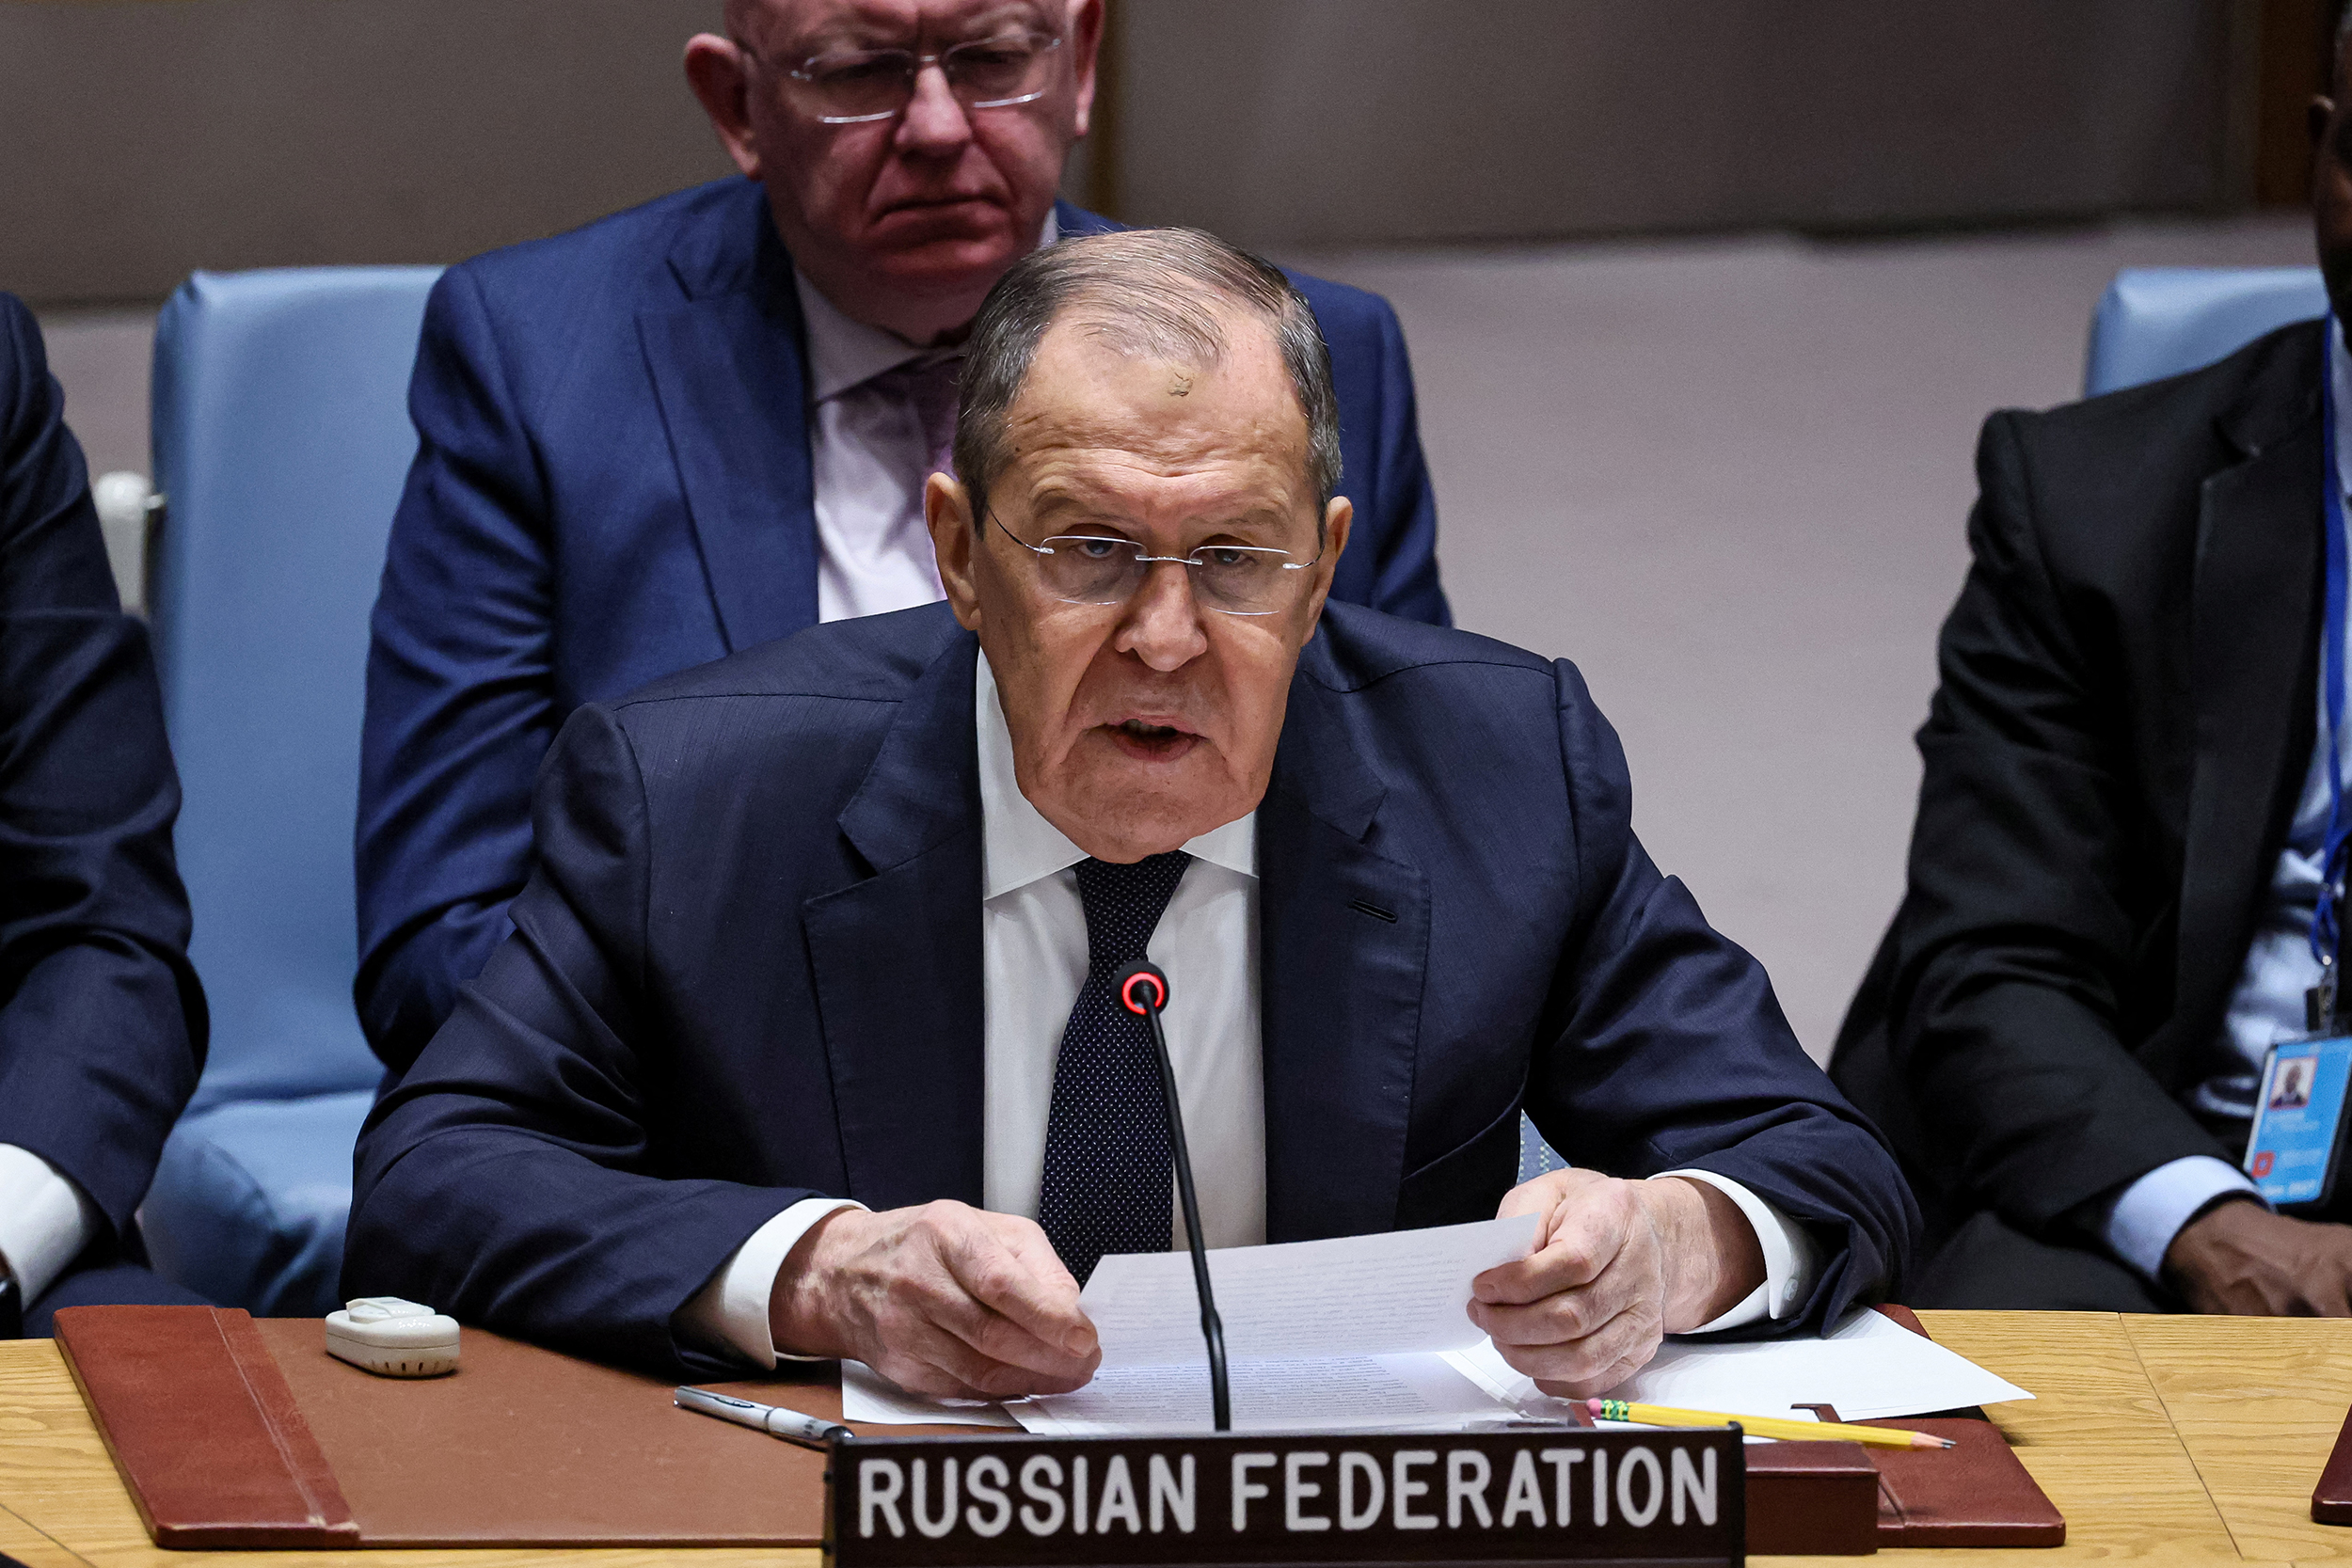 مندوبا روسيا وإسرائيل يتبادلان اللوم في مجلس الأمن حول القضية الفلسطينية